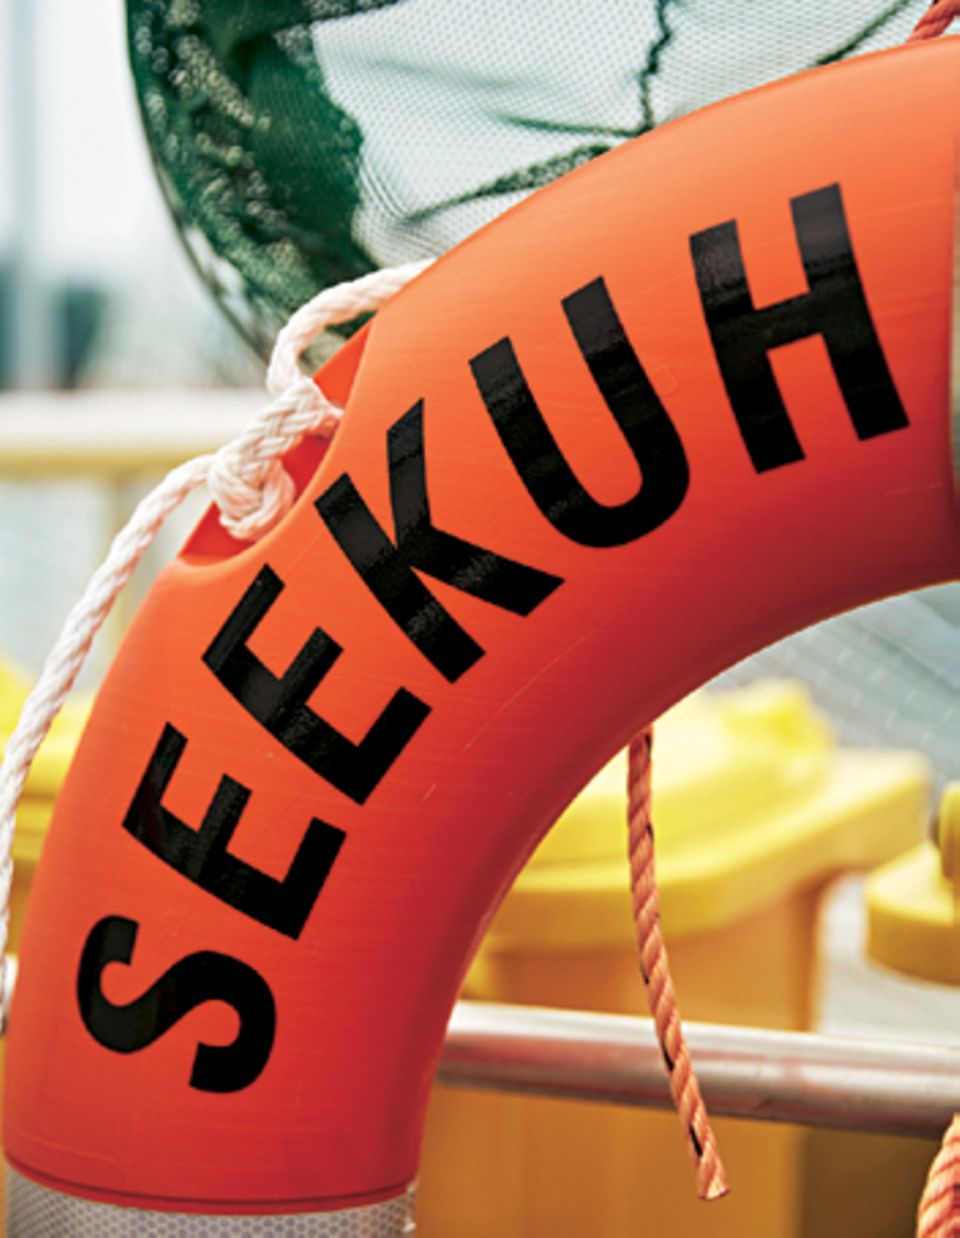 Plastikmüll: Rettungsreifen mit Schriftzug "Seekuh"